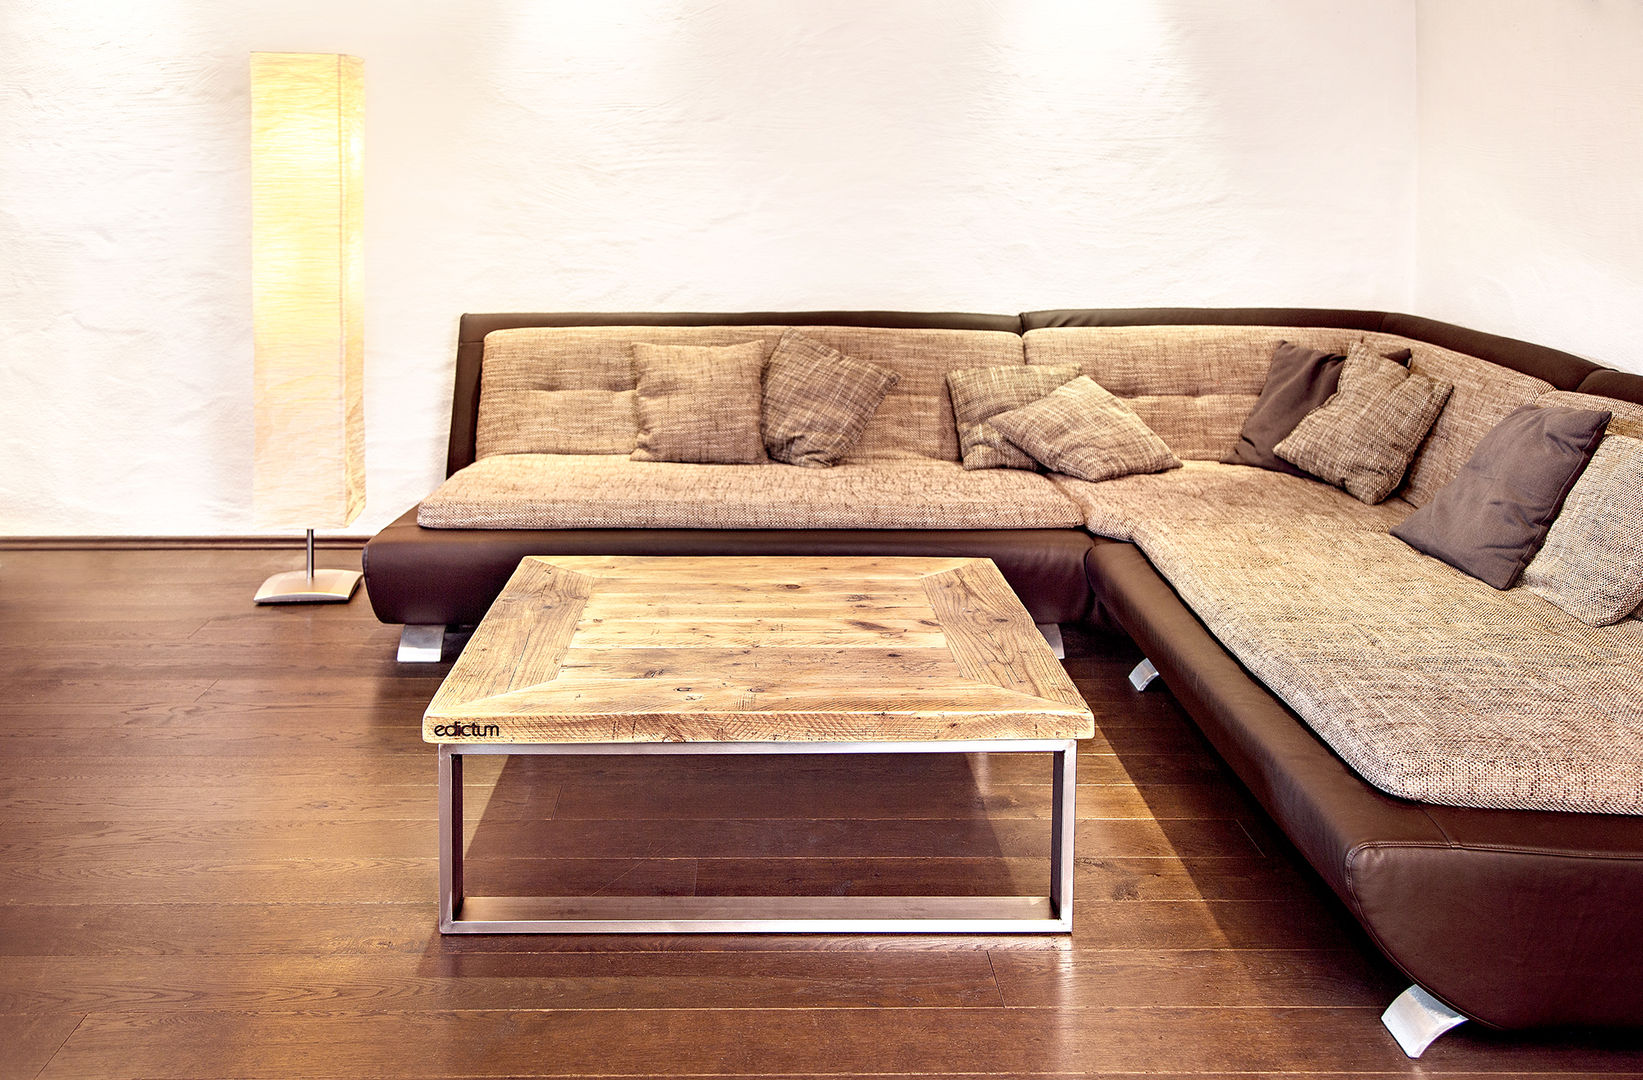 Coffee table stainless steel, edictum - UNIKAT MOBILIAR edictum - UNIKAT MOBILIAR Living room